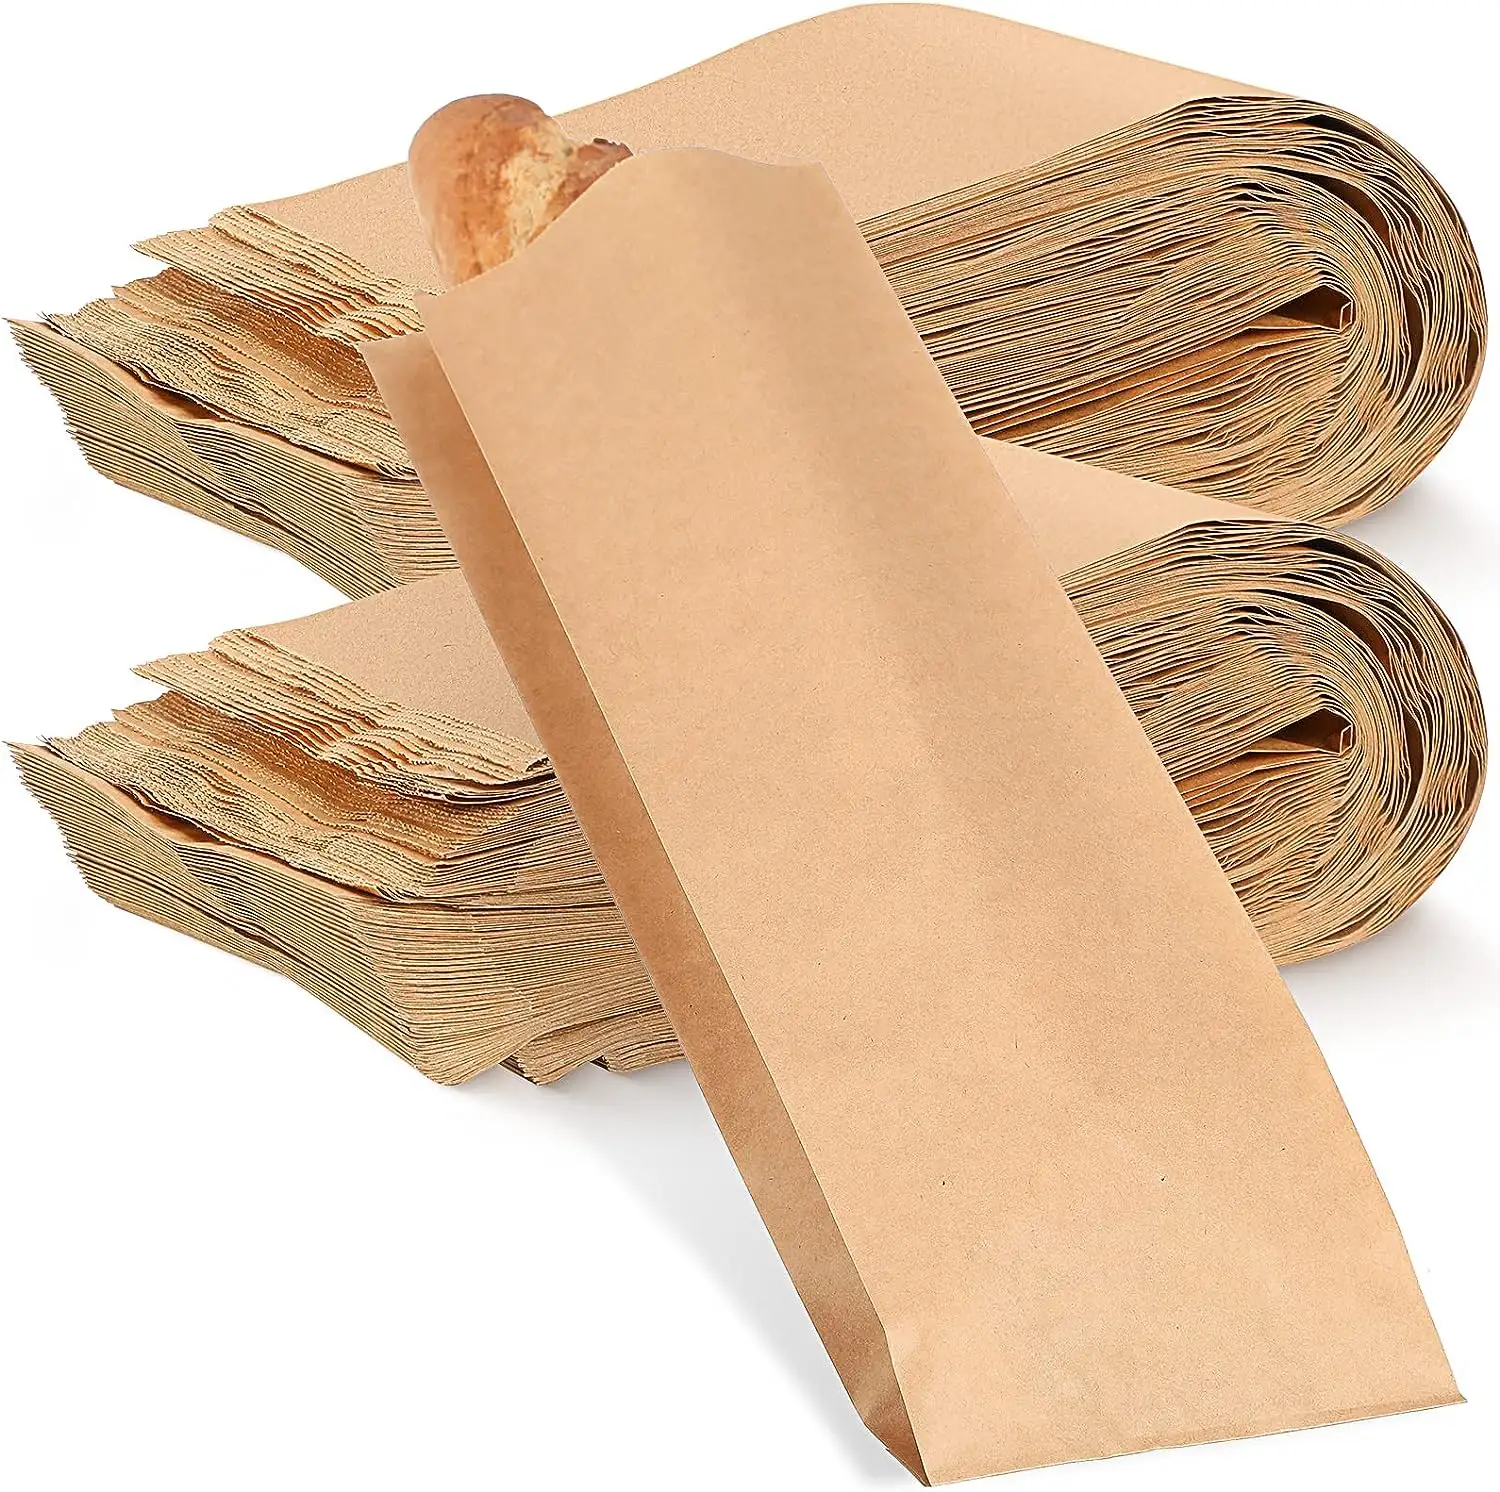 Bolsa de papel casera para pan, bolsas de almacenamiento de pan de papel personalizadas, embalaje de galletas de pan largo desechable para panadería, horneado de alimentos